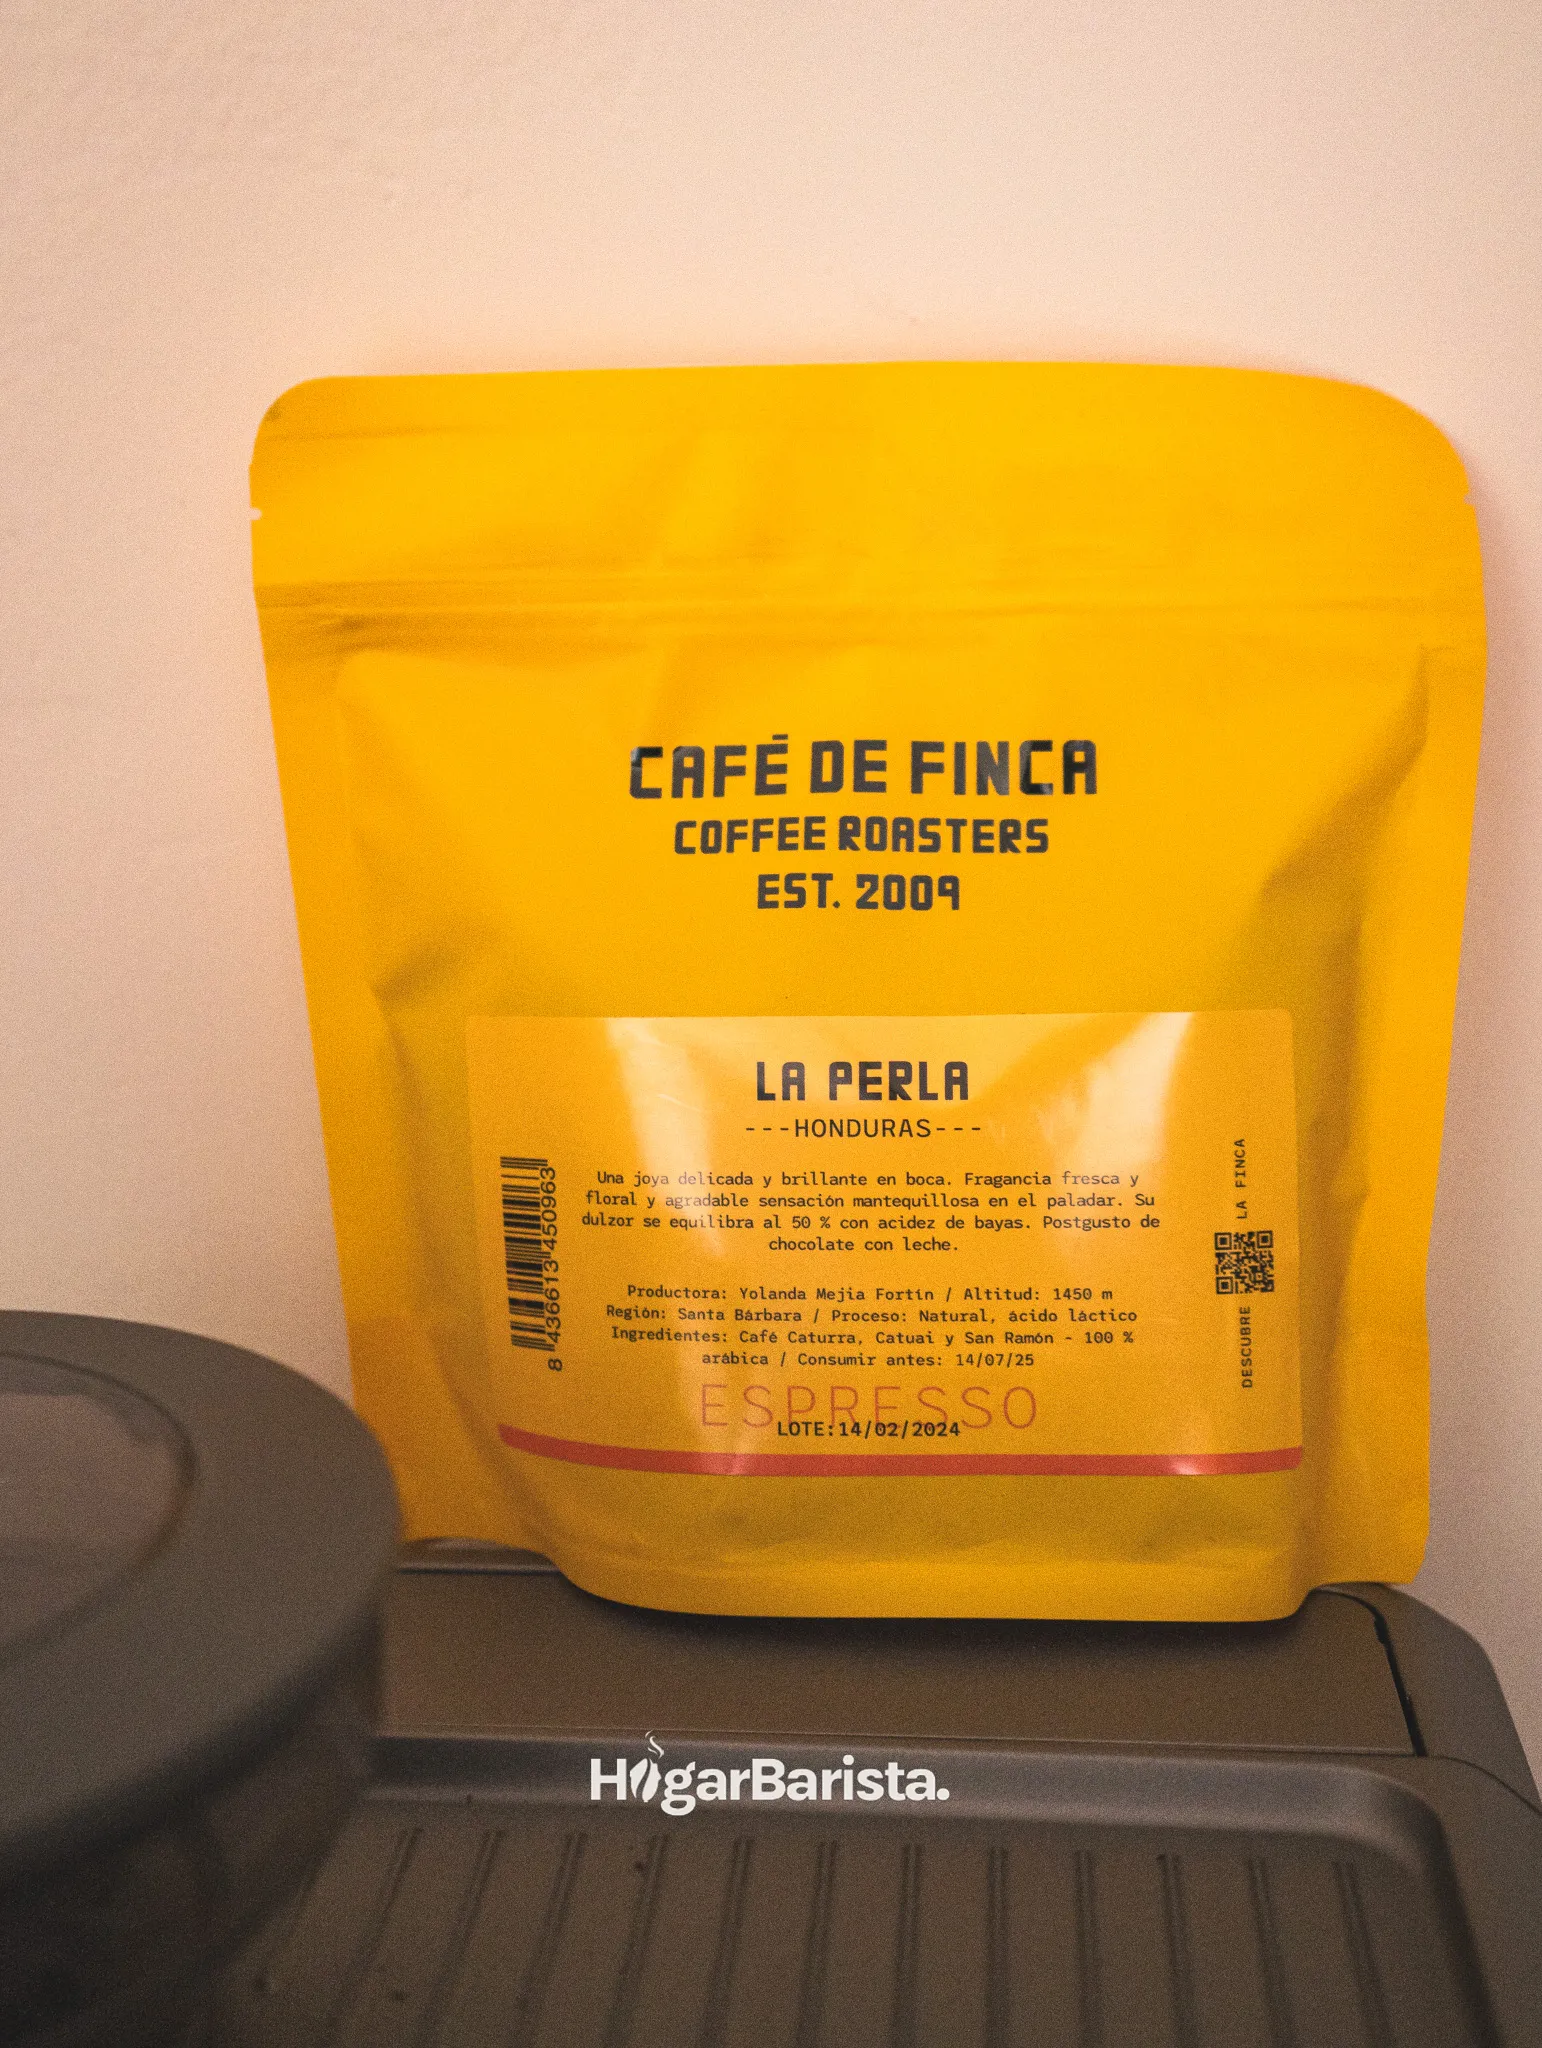 Paquete del café La Perla, del tostador Café de Finca